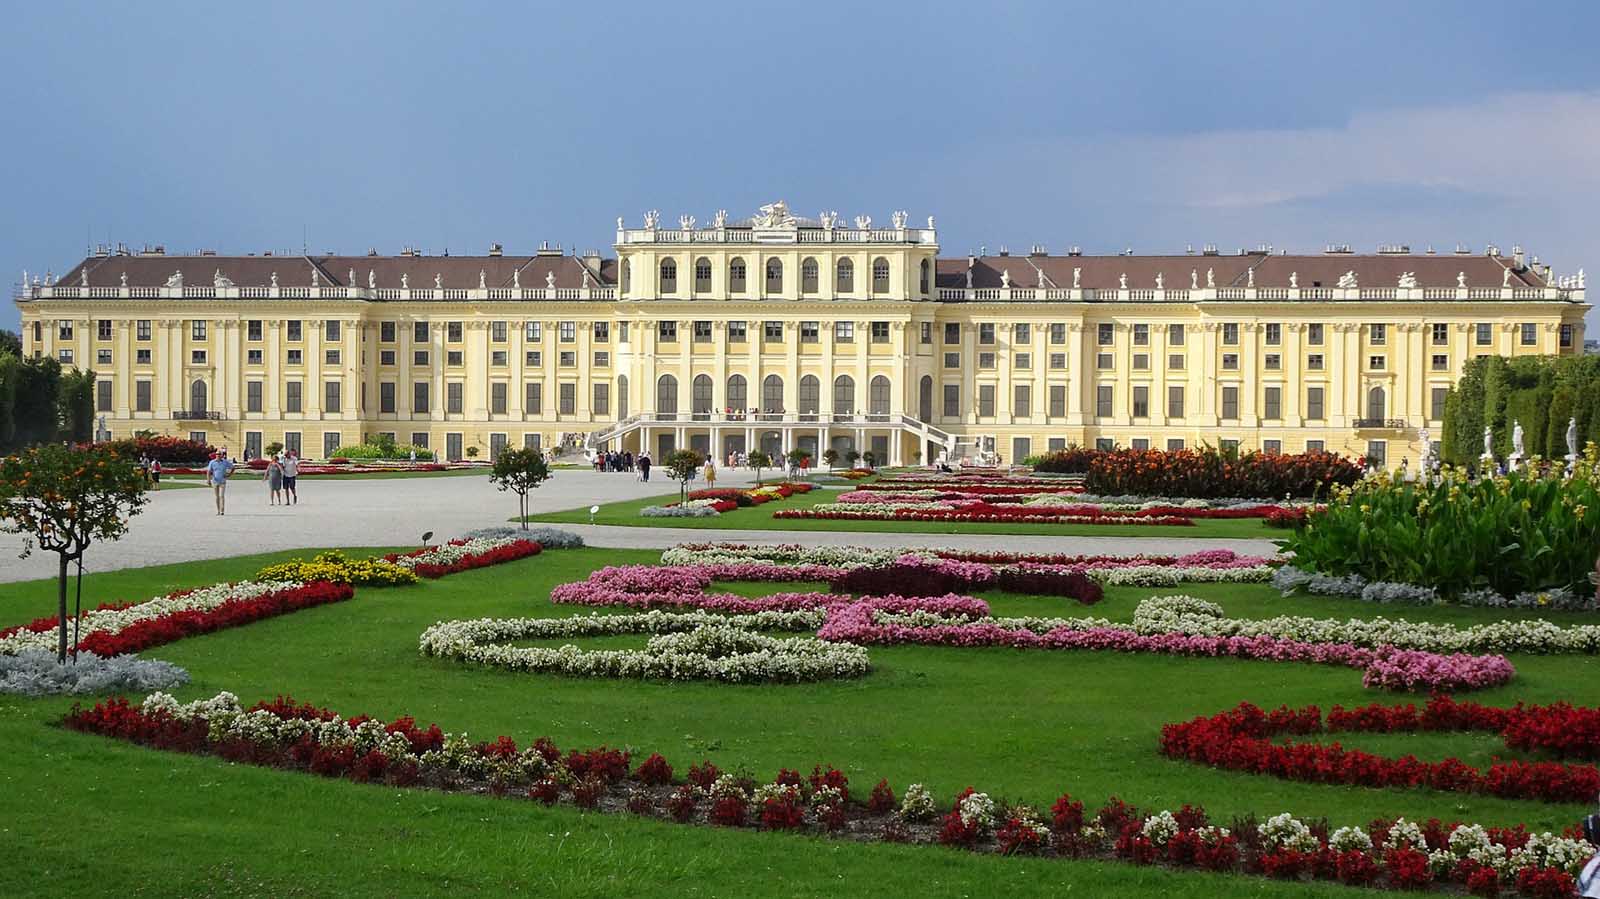 What to do in Vienna Schonbrunn Palace Gardens